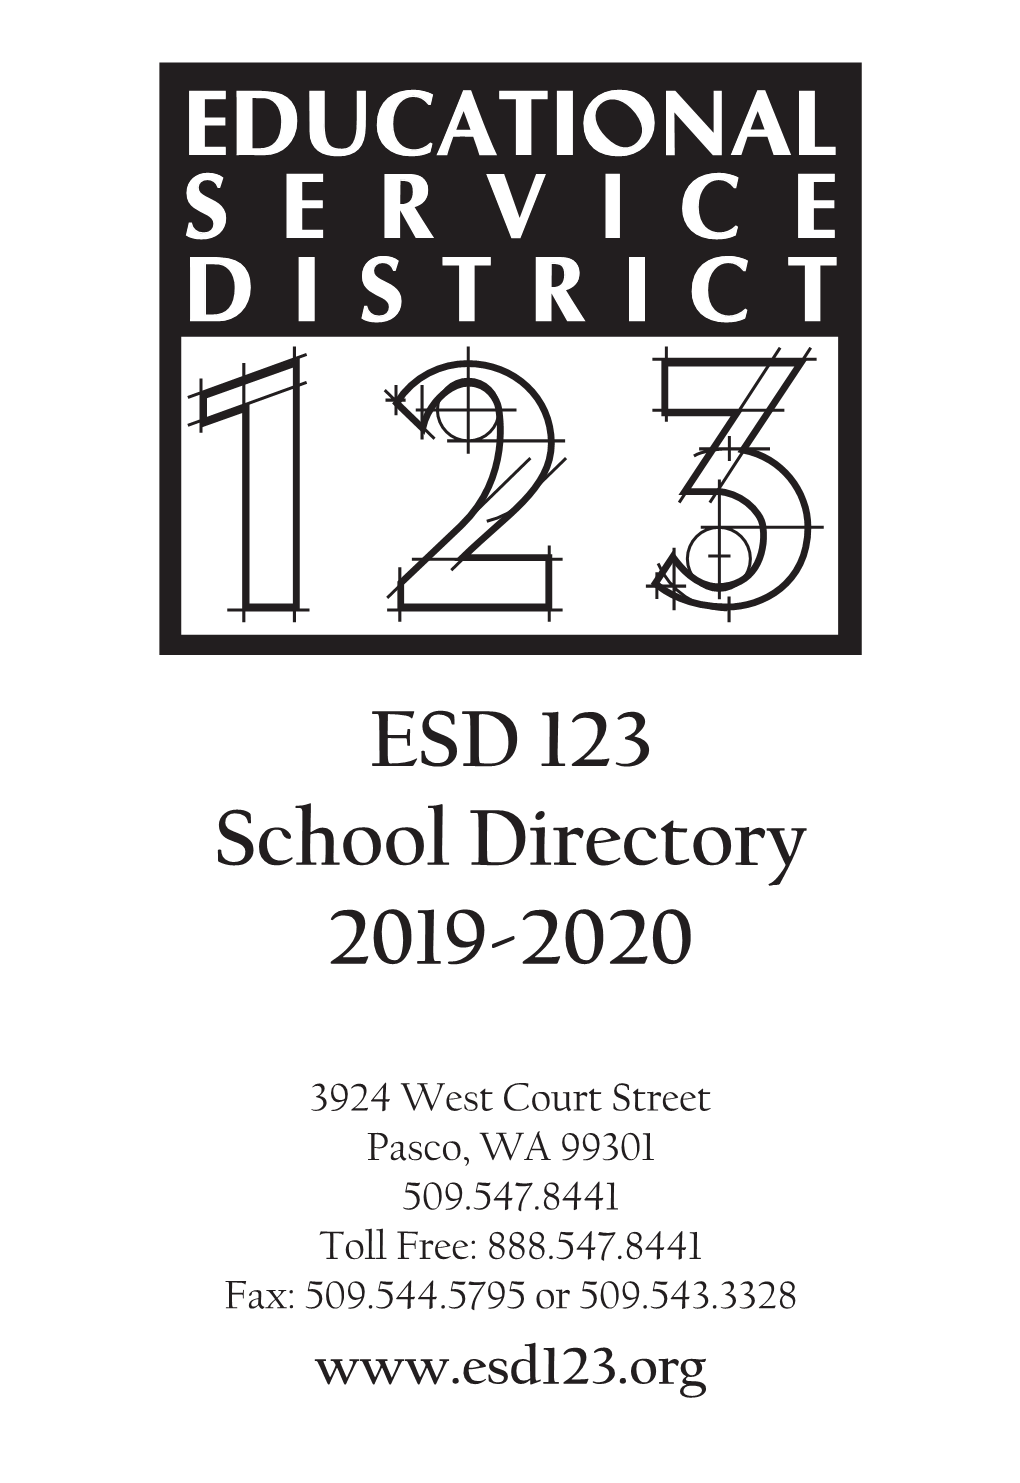 ESD 123 School Directory 2019-2020